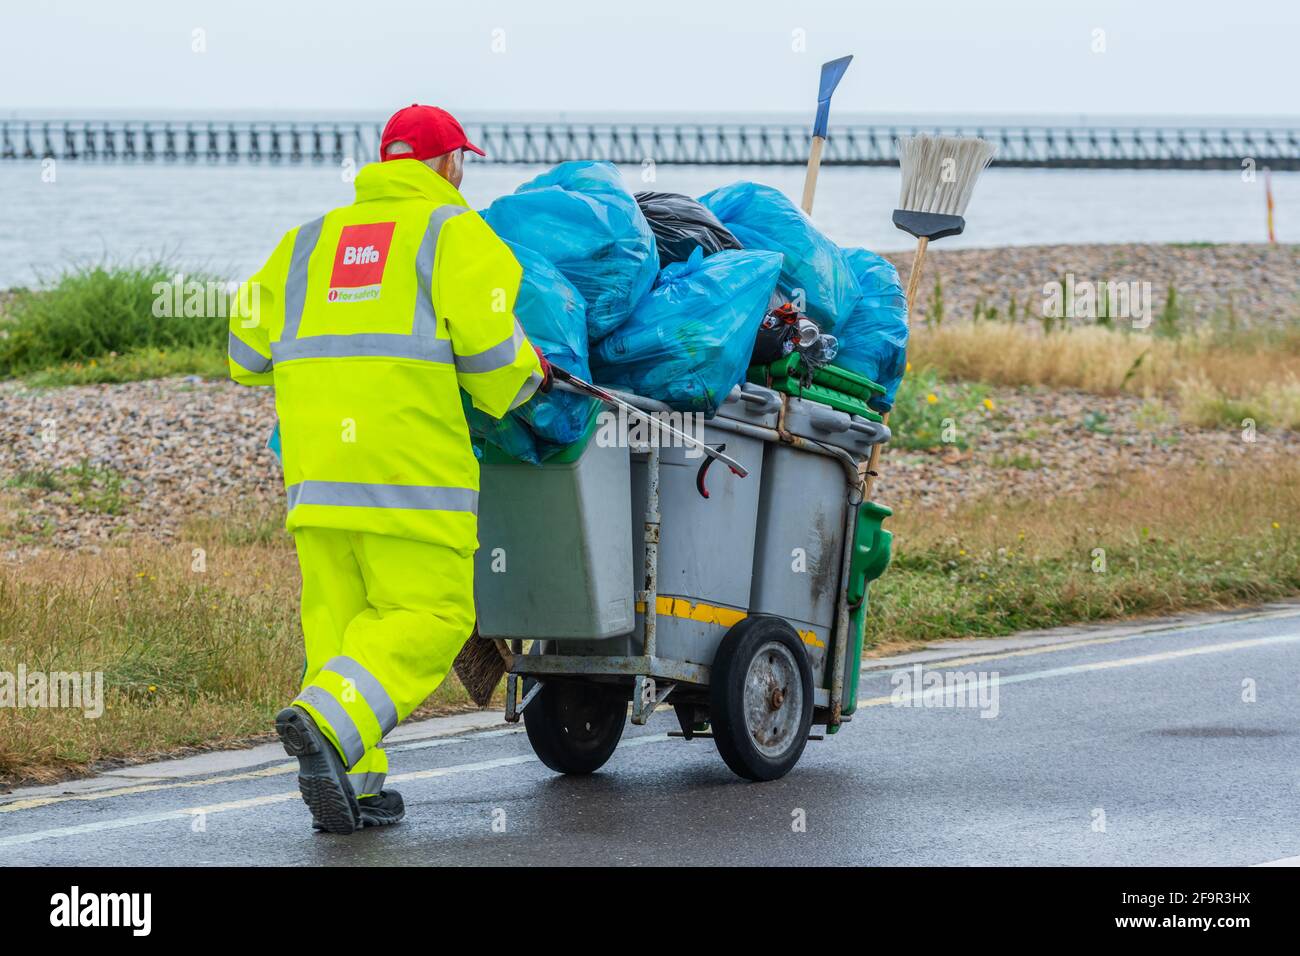 Un travailleur de Biffa pousse des poubelles et récolte des déchets sur la promenade de Littlehampton, West Sussex, Angleterre, Royaume-Uni. Banque D'Images